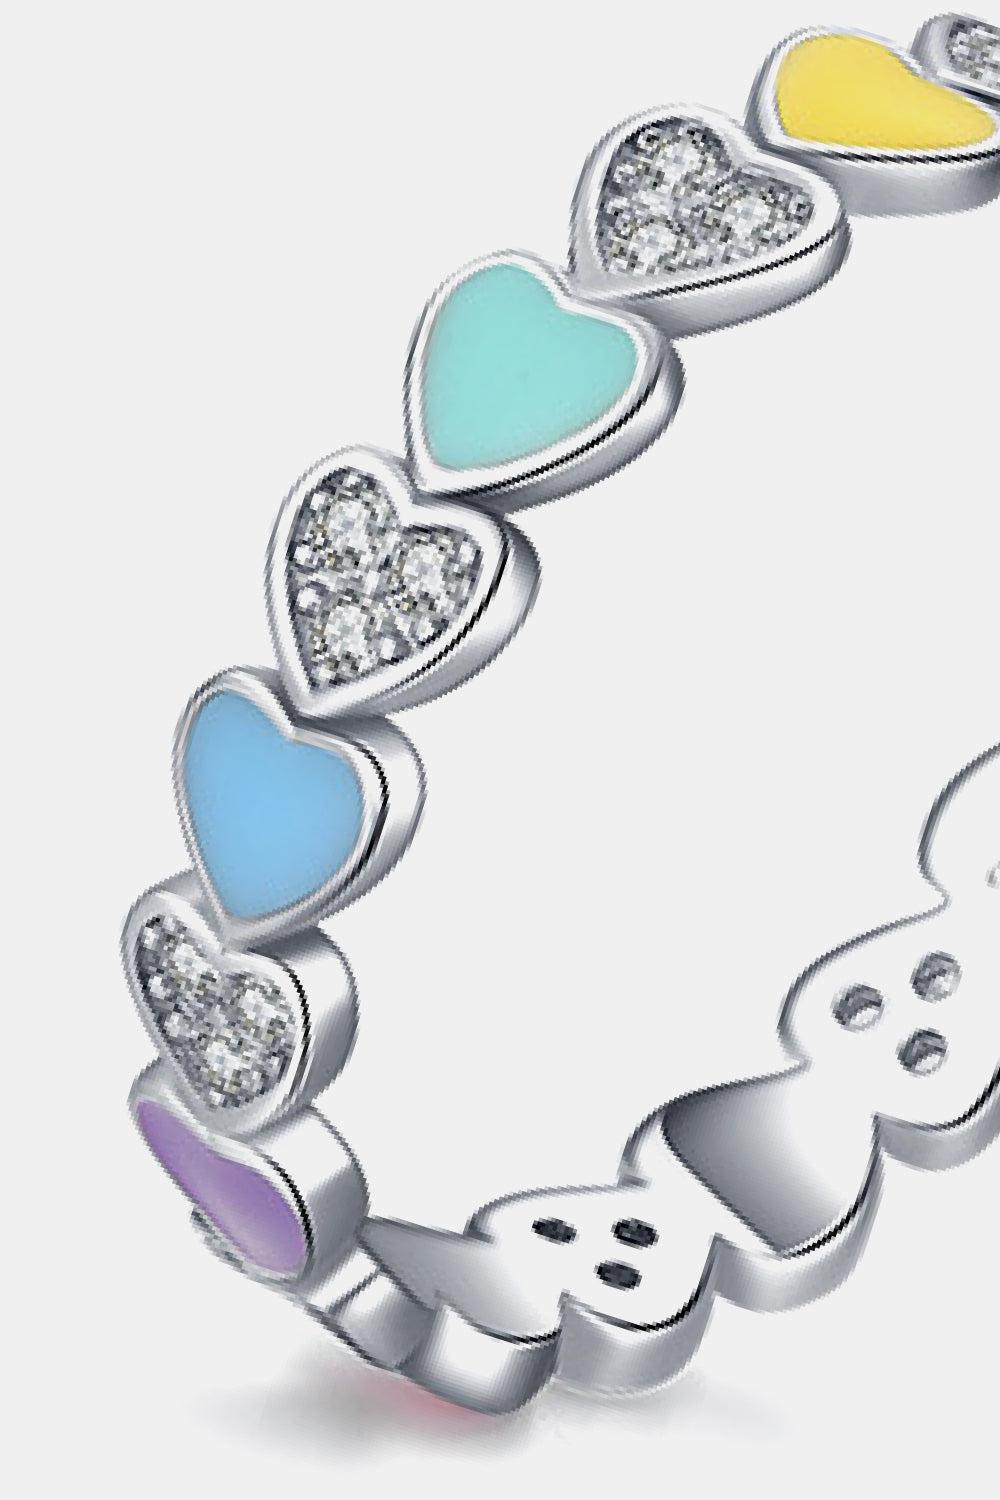 Heart Shape 925 Sterling Silver Zircon Ring BLUE ZONE PLANET